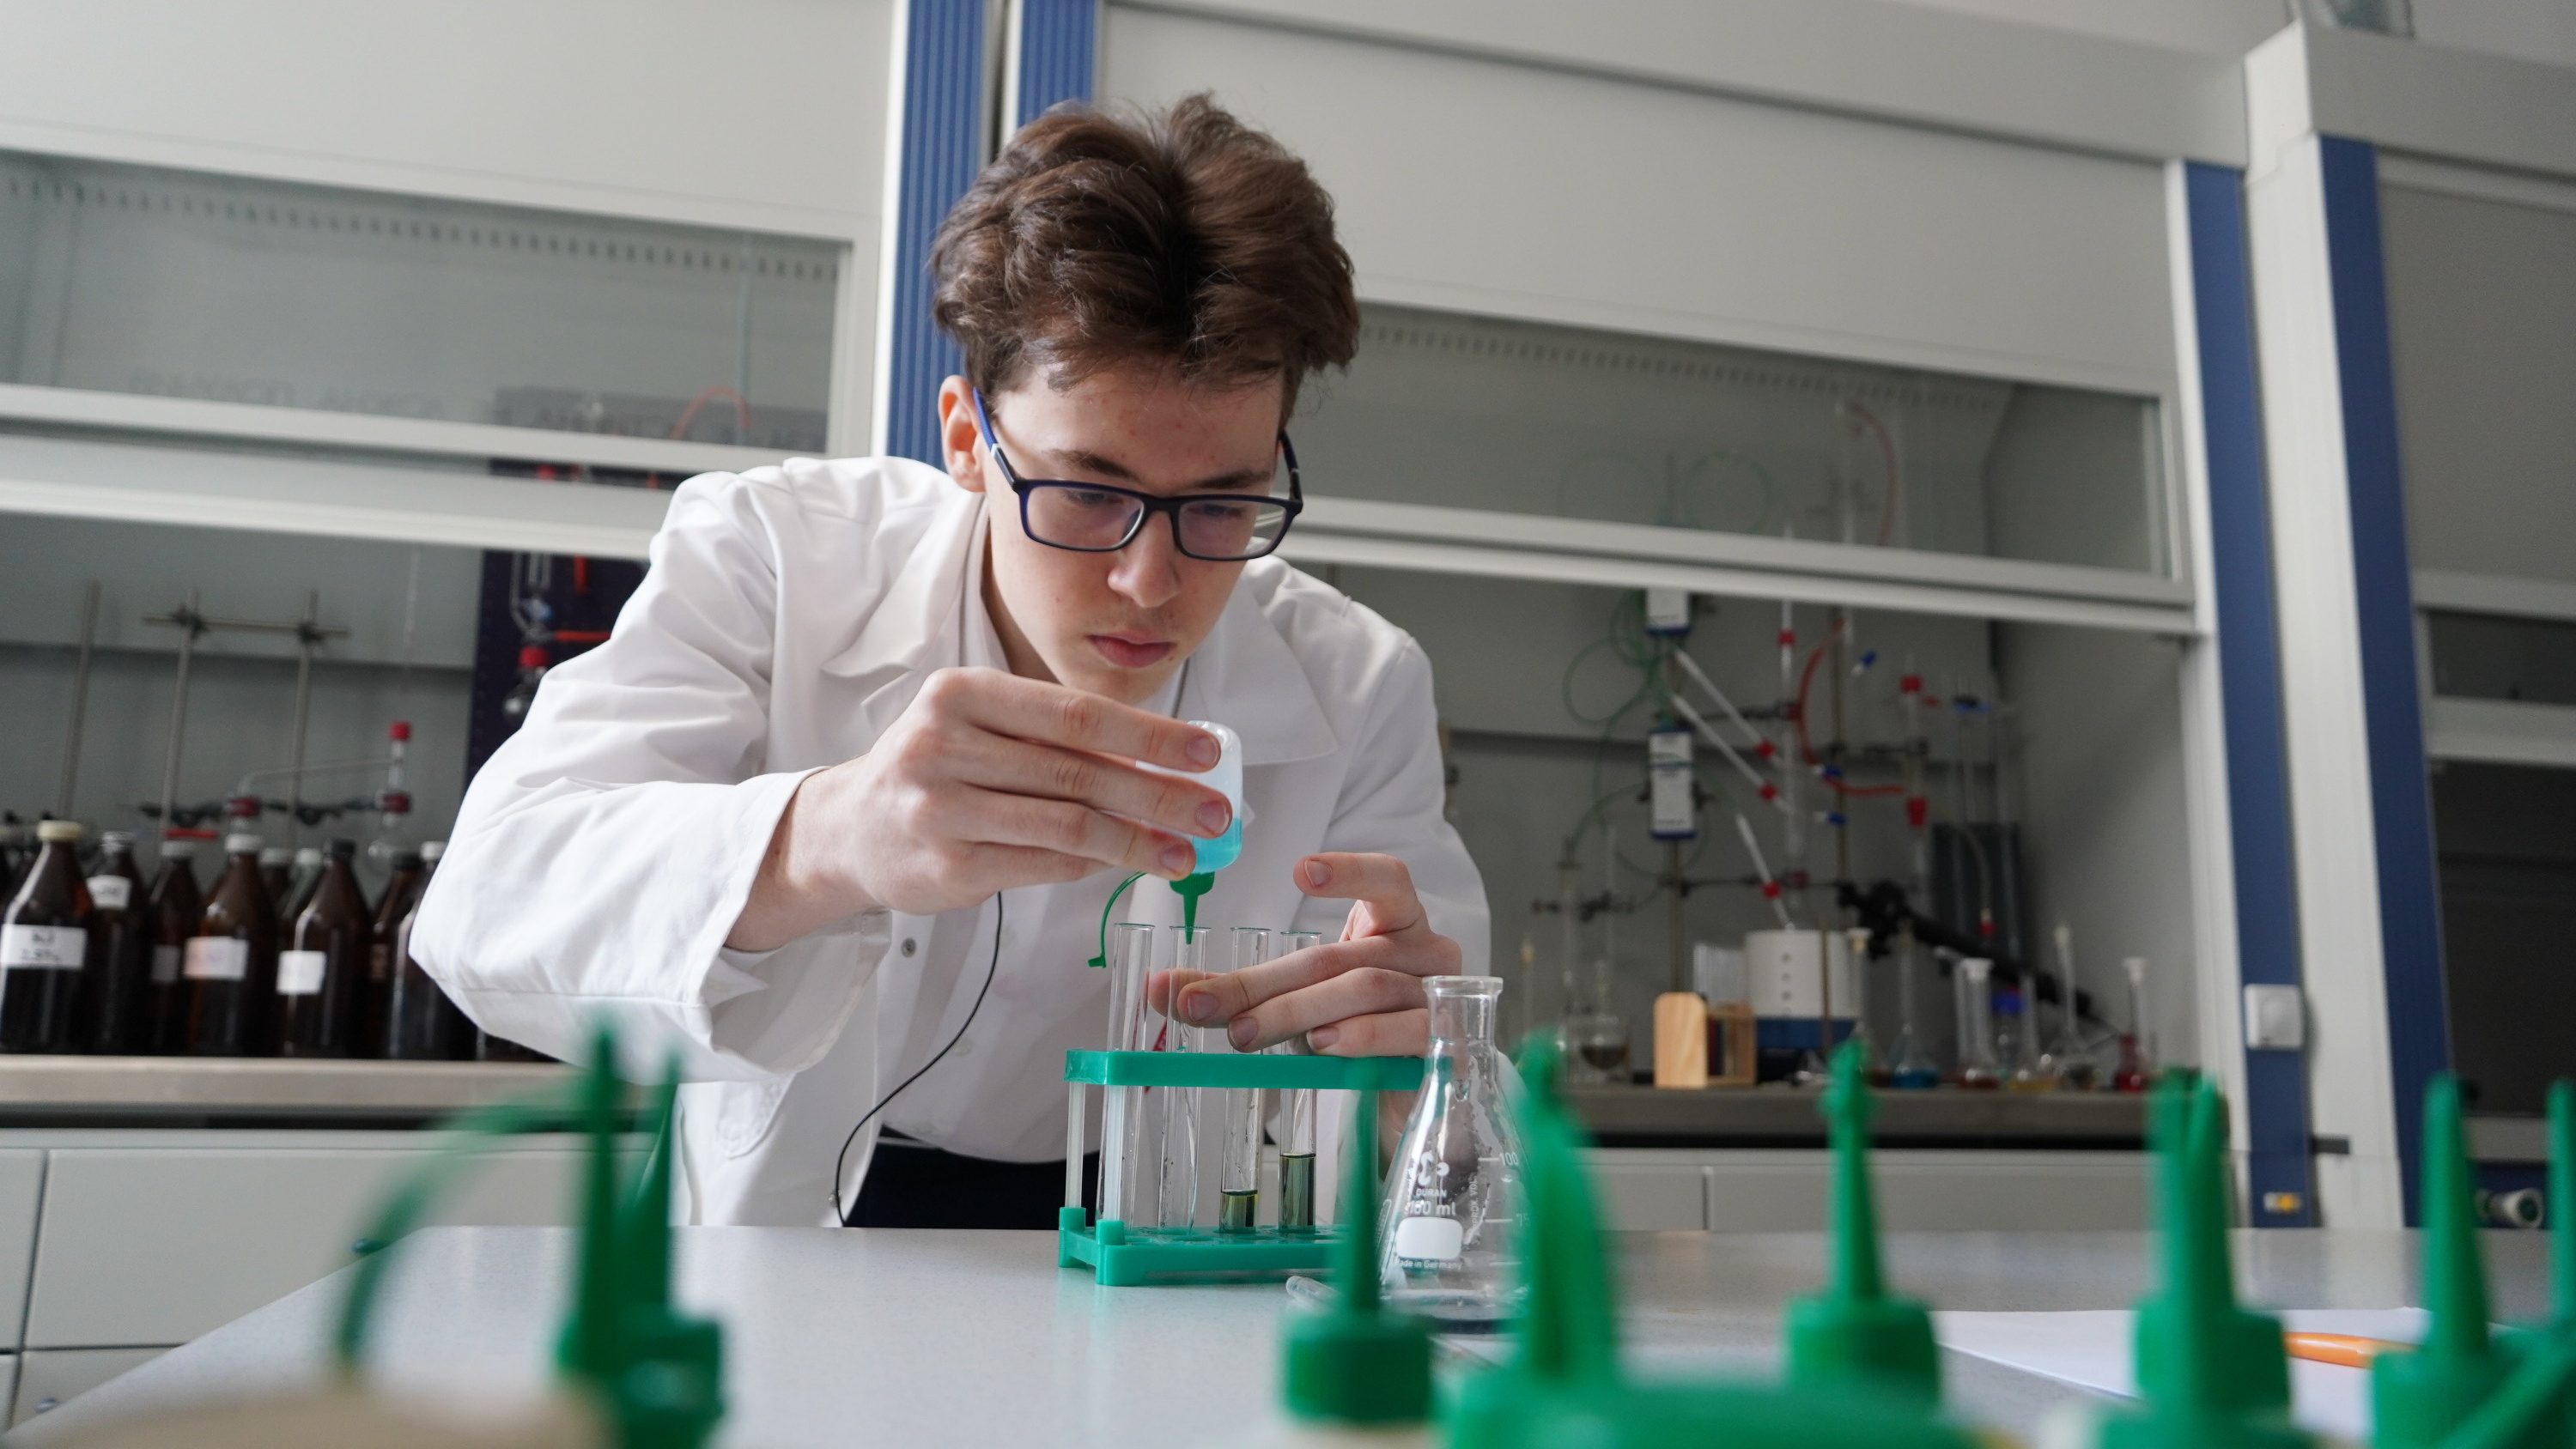 «ЕГЭ плохо показывает, как человек мыслит»: самарский школьник стал одним из лучших юных химиков мира